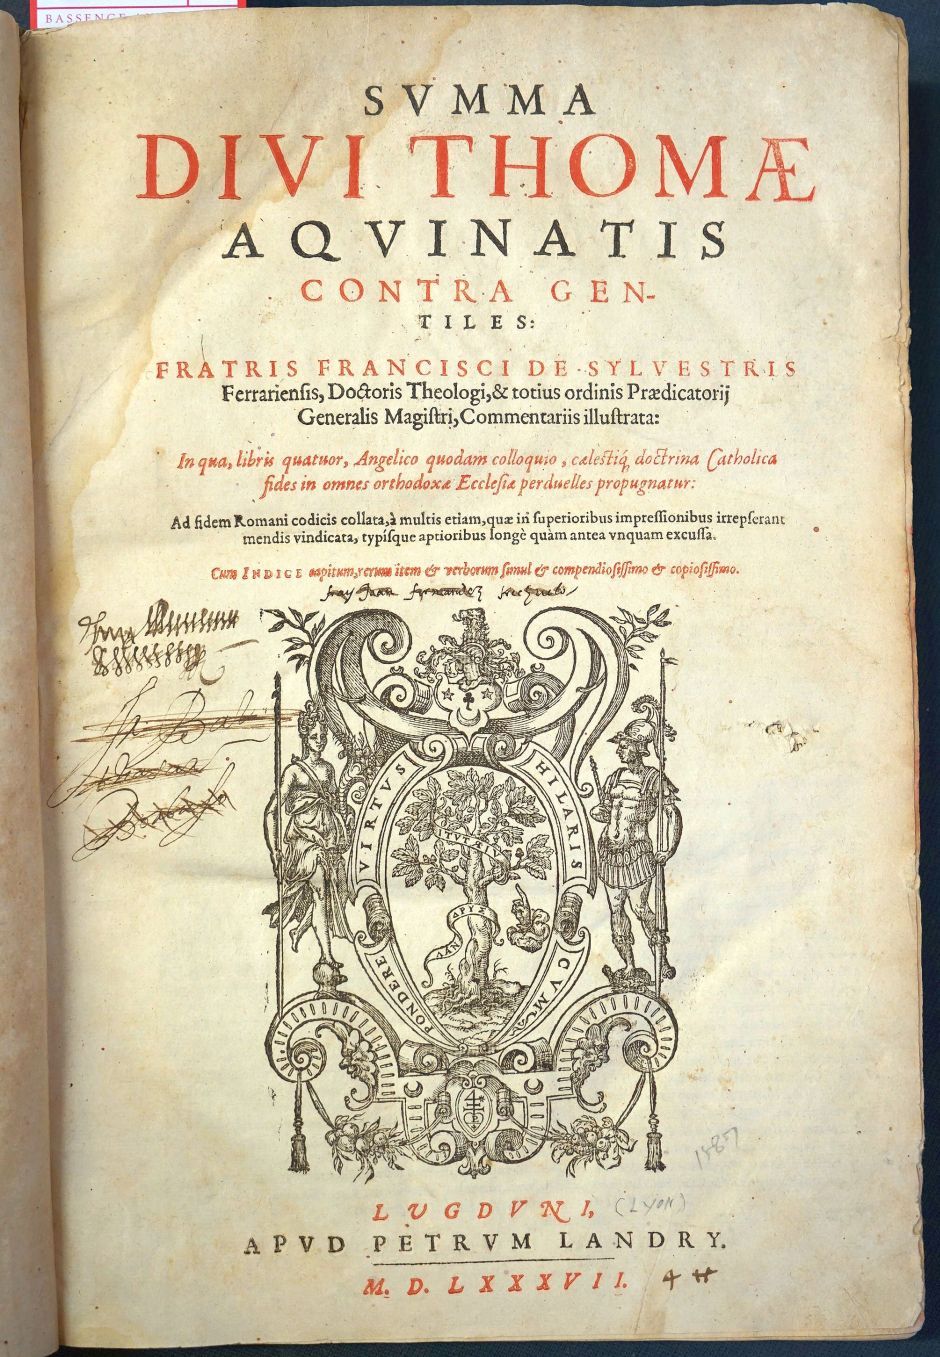 Lot 1204, Auction  115, Thomas von Aquin, Summa contra gentiles